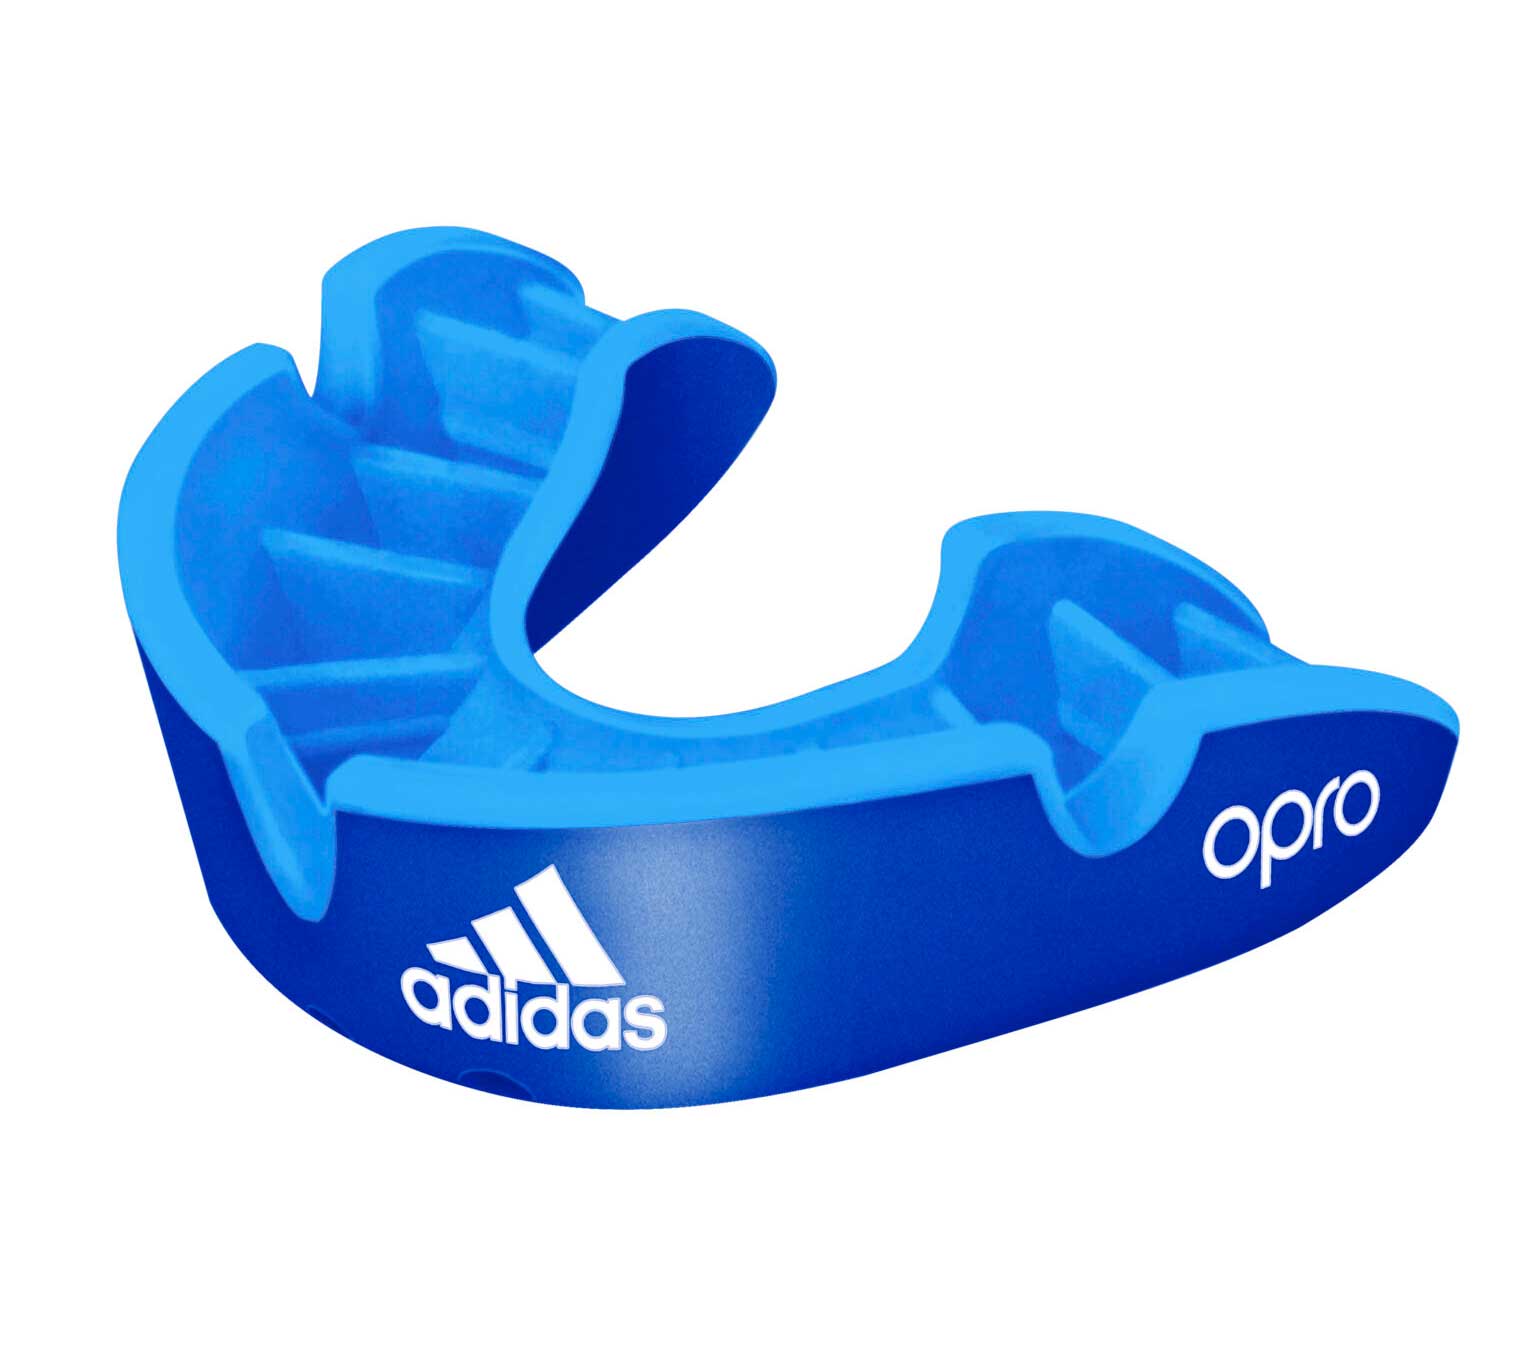 Купить Капа одночелюстная Adidas adiBP32 Opro Silver Gen4 Self-Fit Mouthguard синяя,